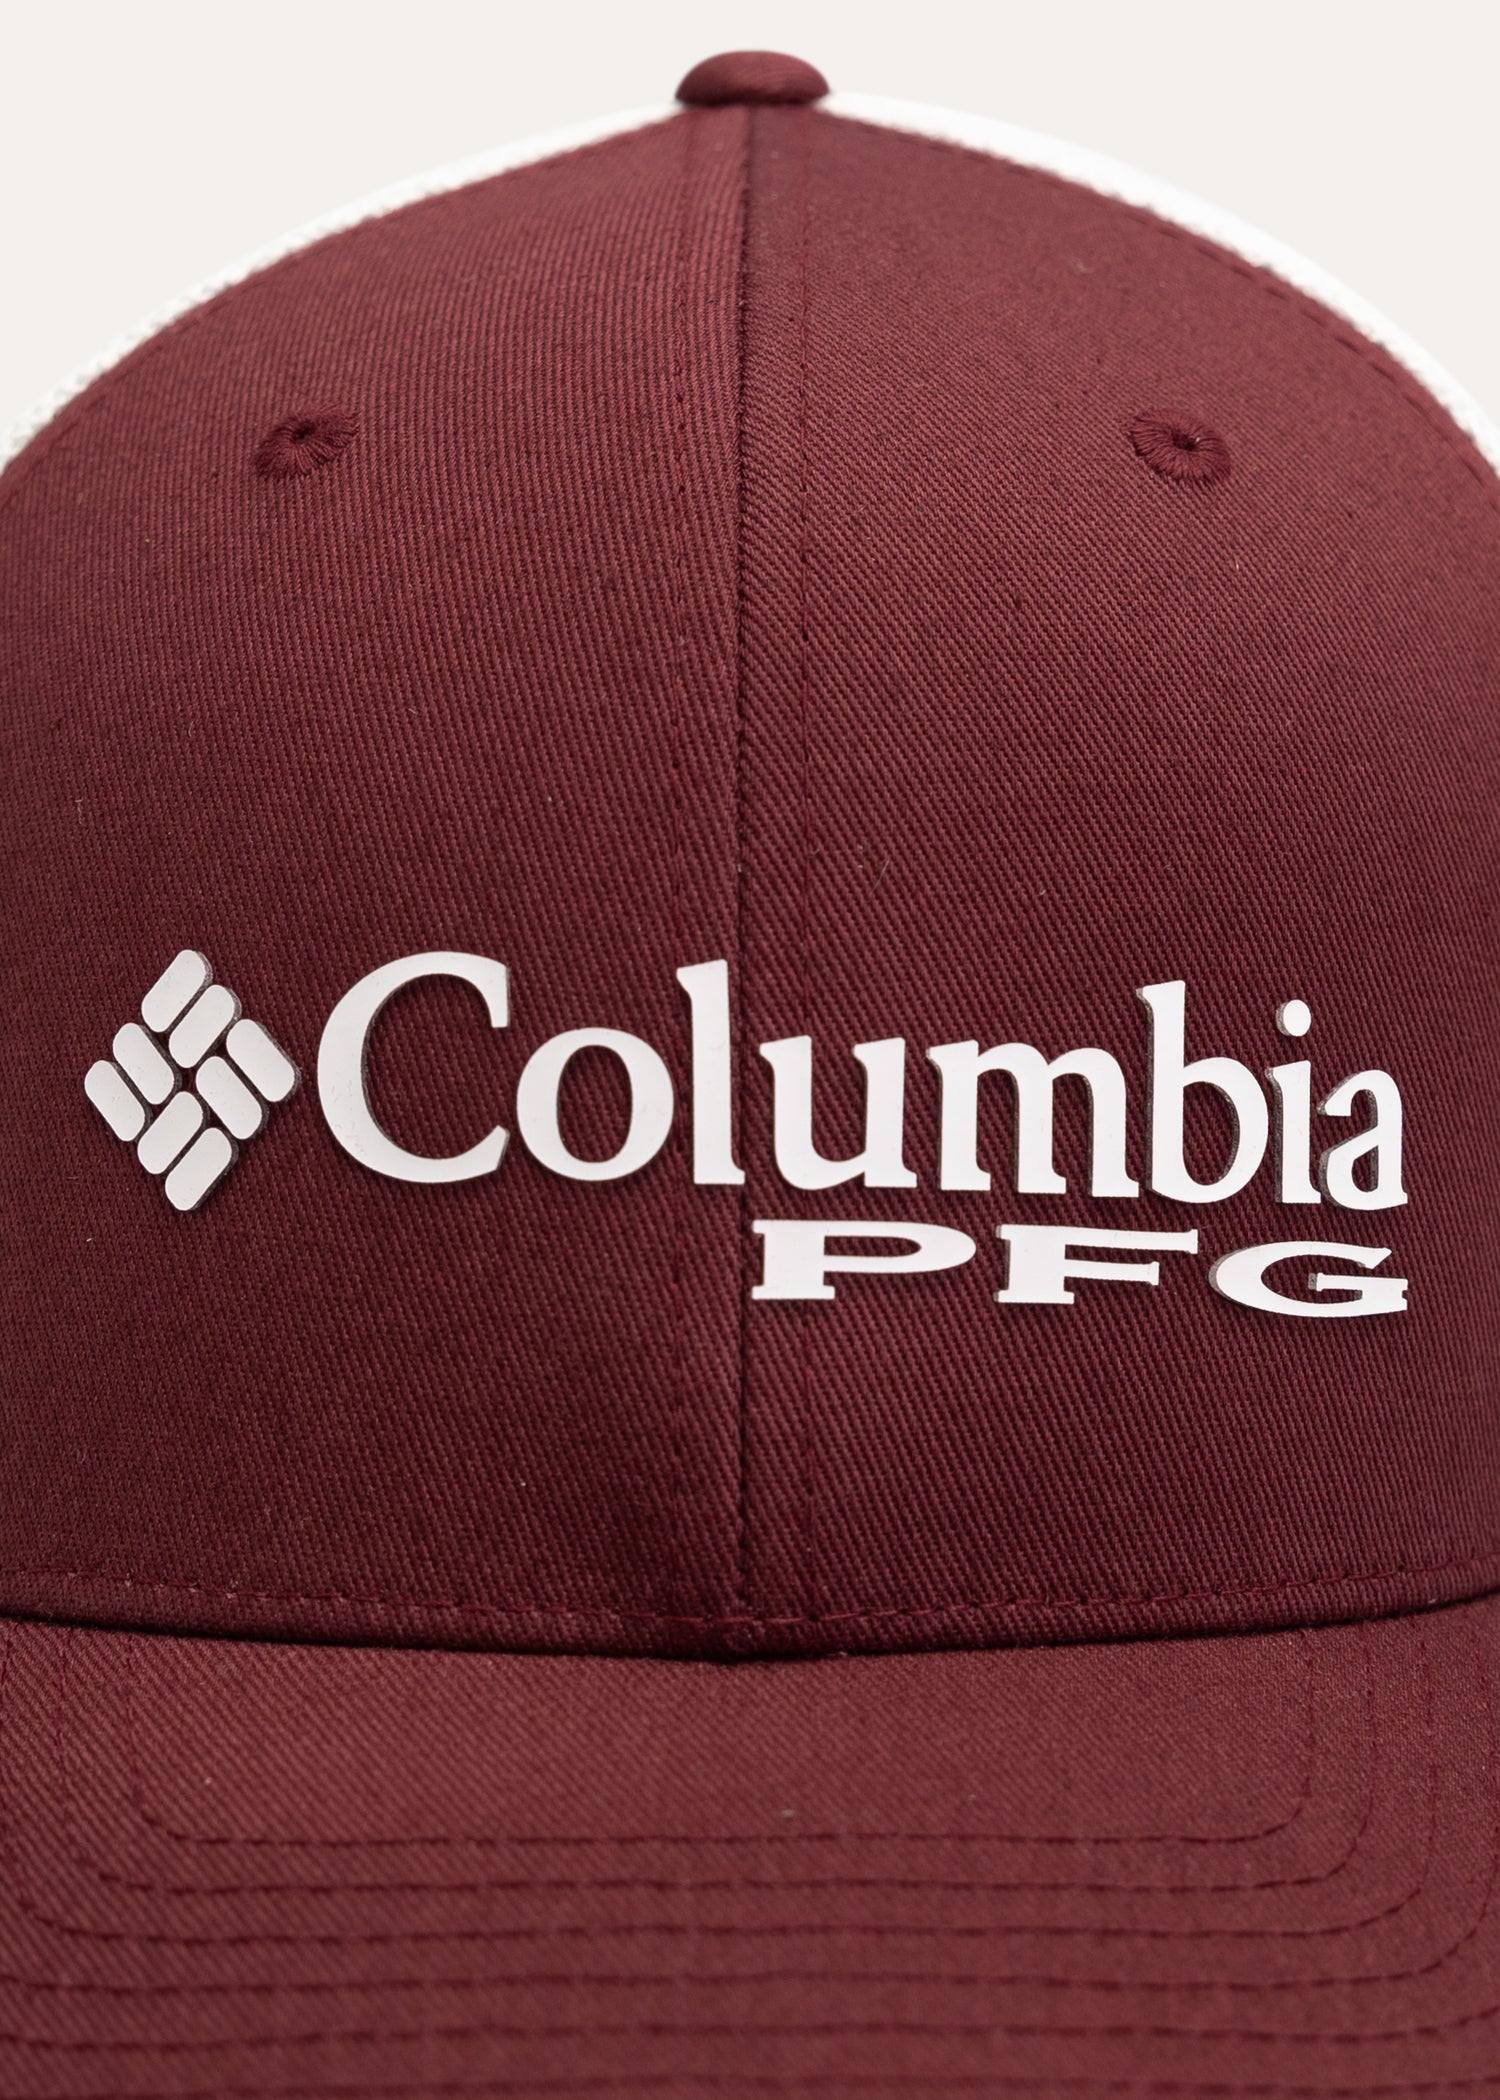 Blue Texas Columbia PFG Fitted Hat L/XL 